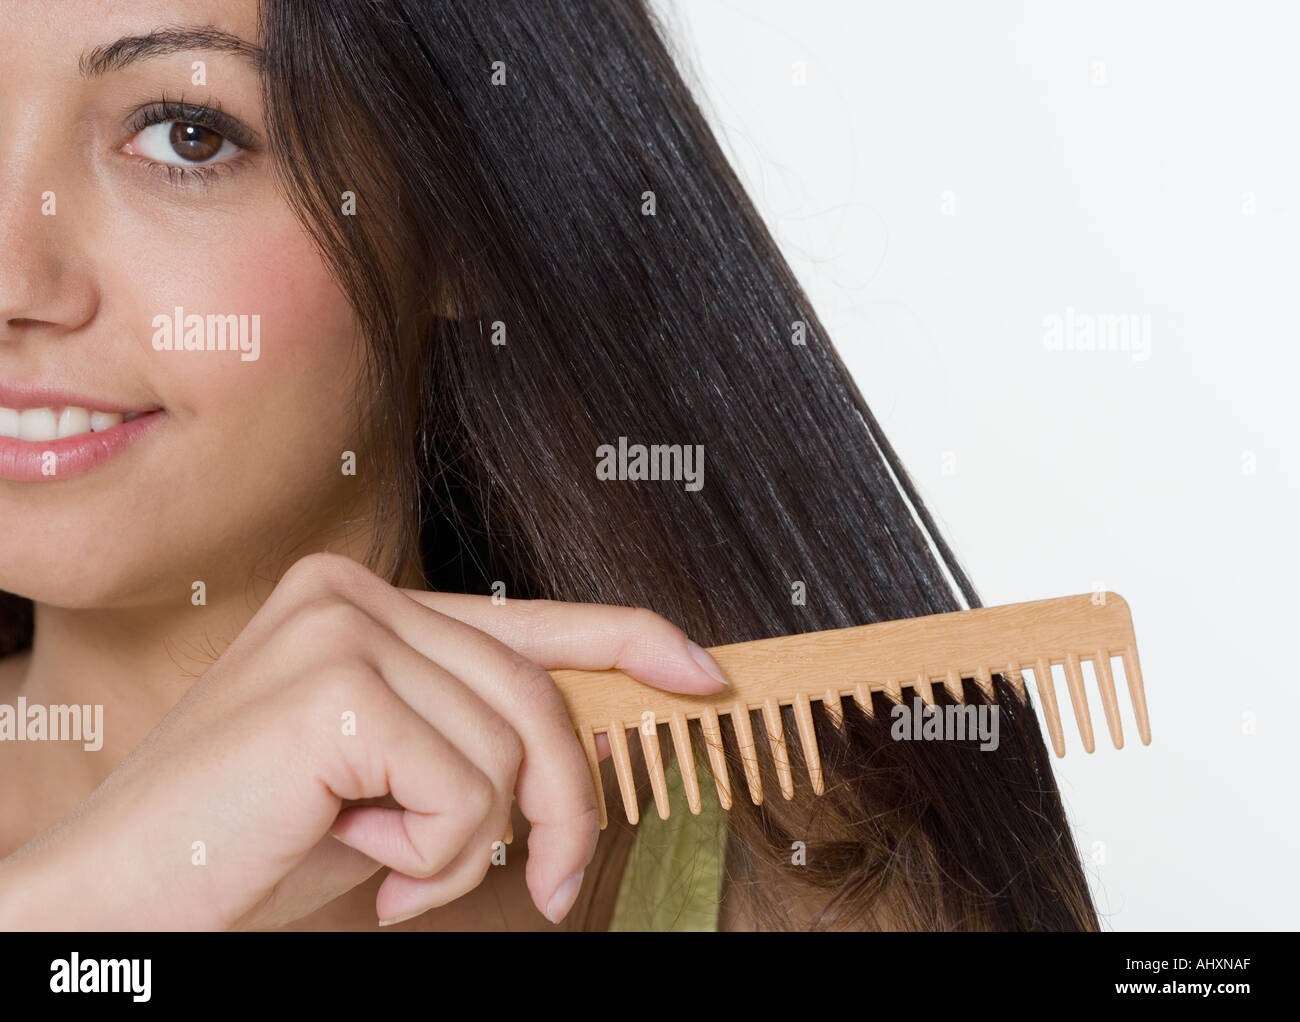 Почему нельзя расчесывать волосы. Расчесывать волосы. Расческа для мокрых волос. Девушка расчесывает волосы гребнем. Расчесывать мокрые волосы.